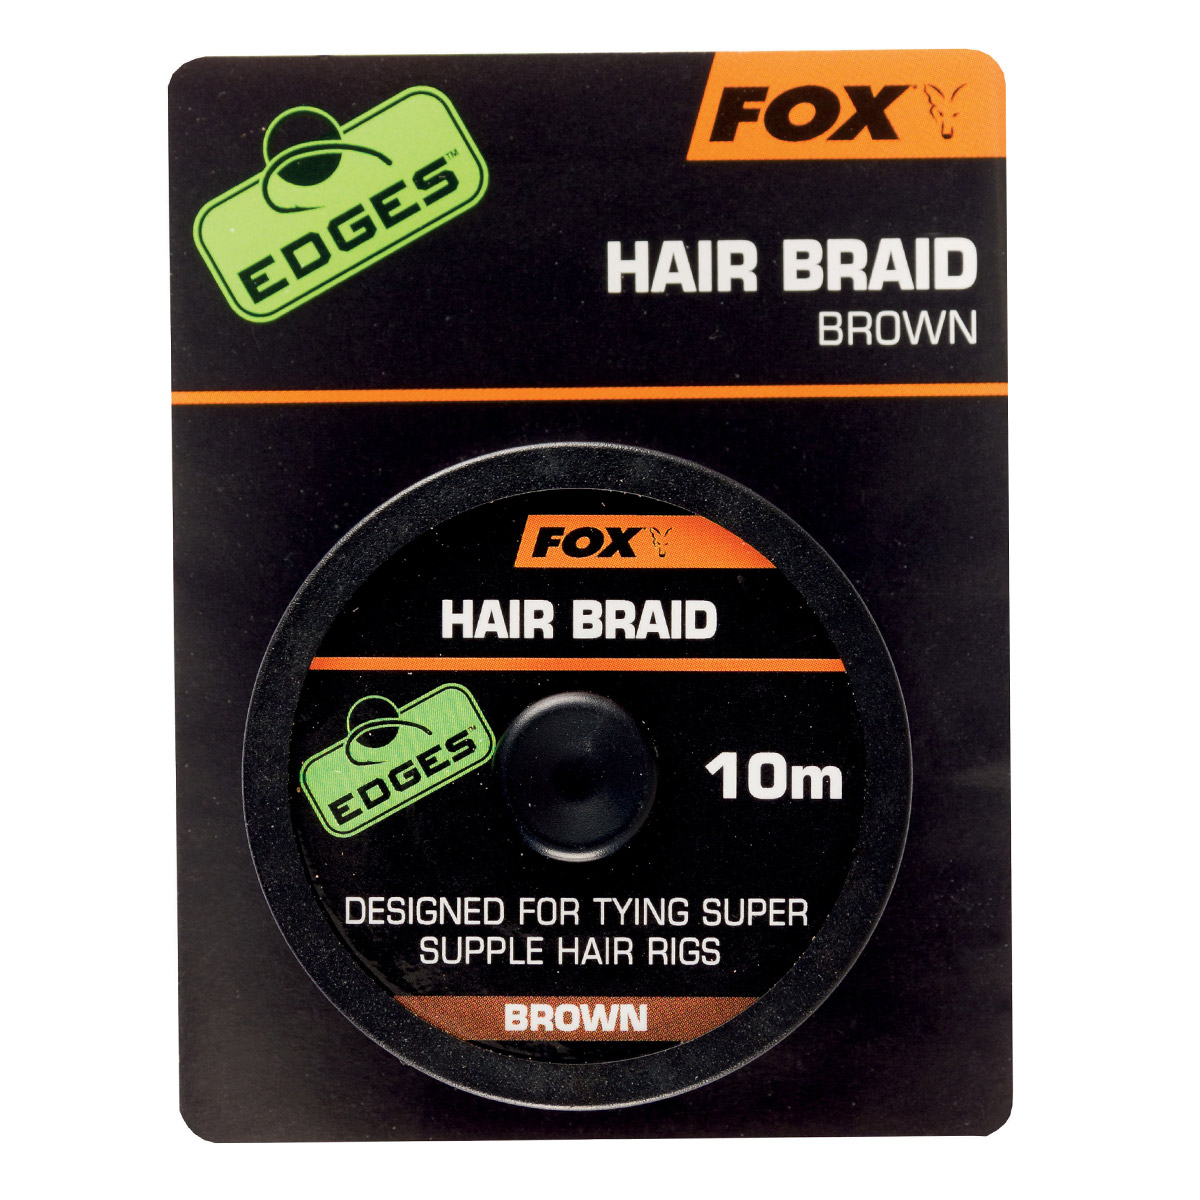 Fox EDGES™ Hair Braid